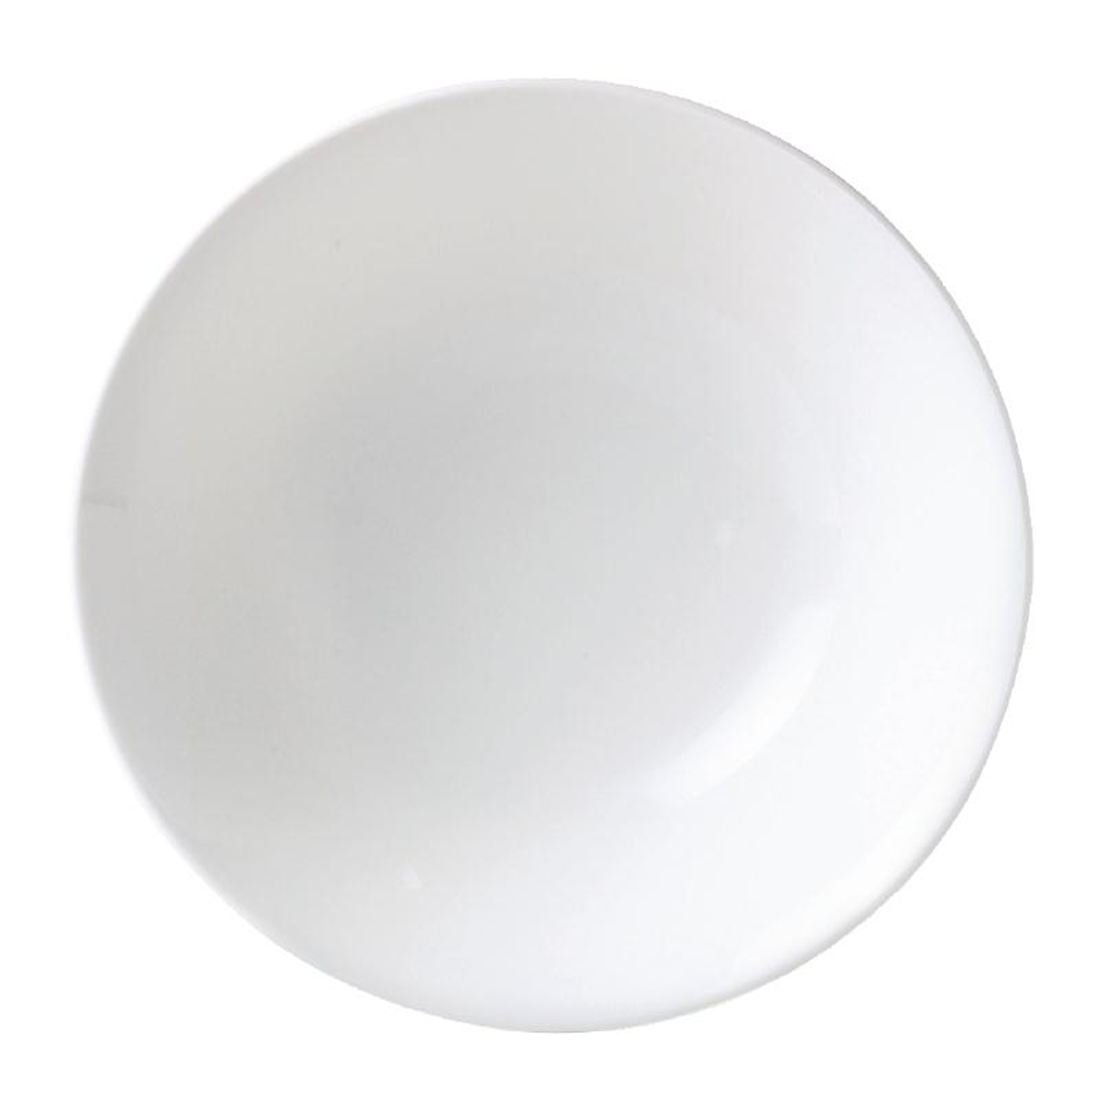 Steelite Monaco White Bowls 202mm